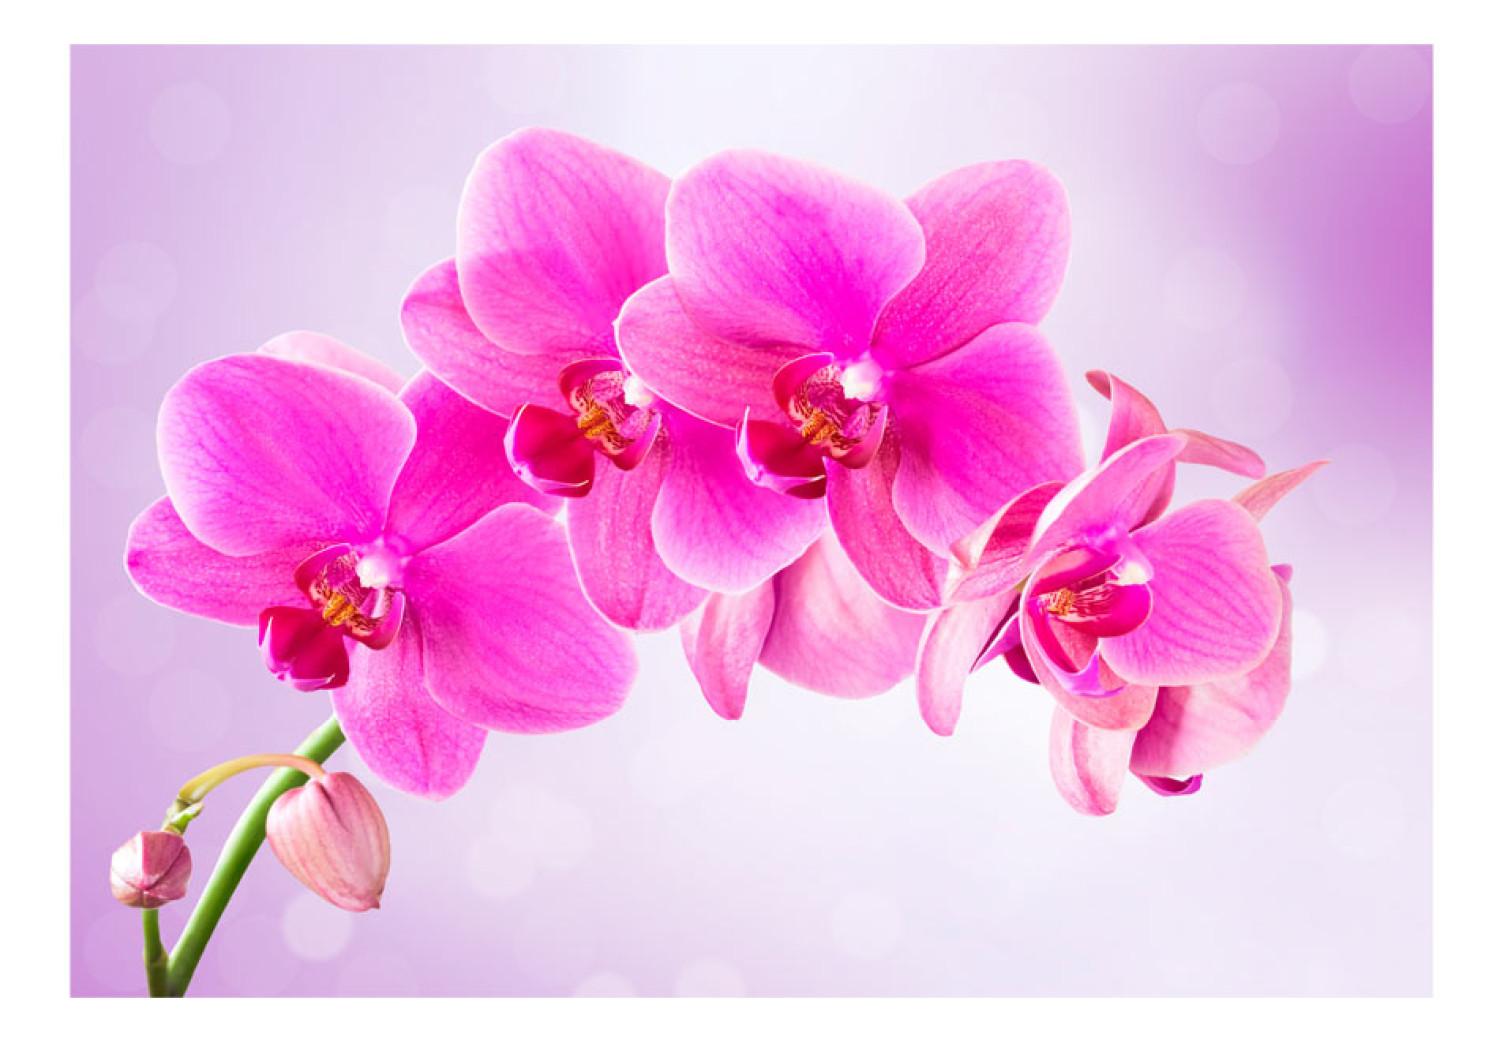 Fotomural decorativo Reflexión - orquídeas rosas en fondo morado